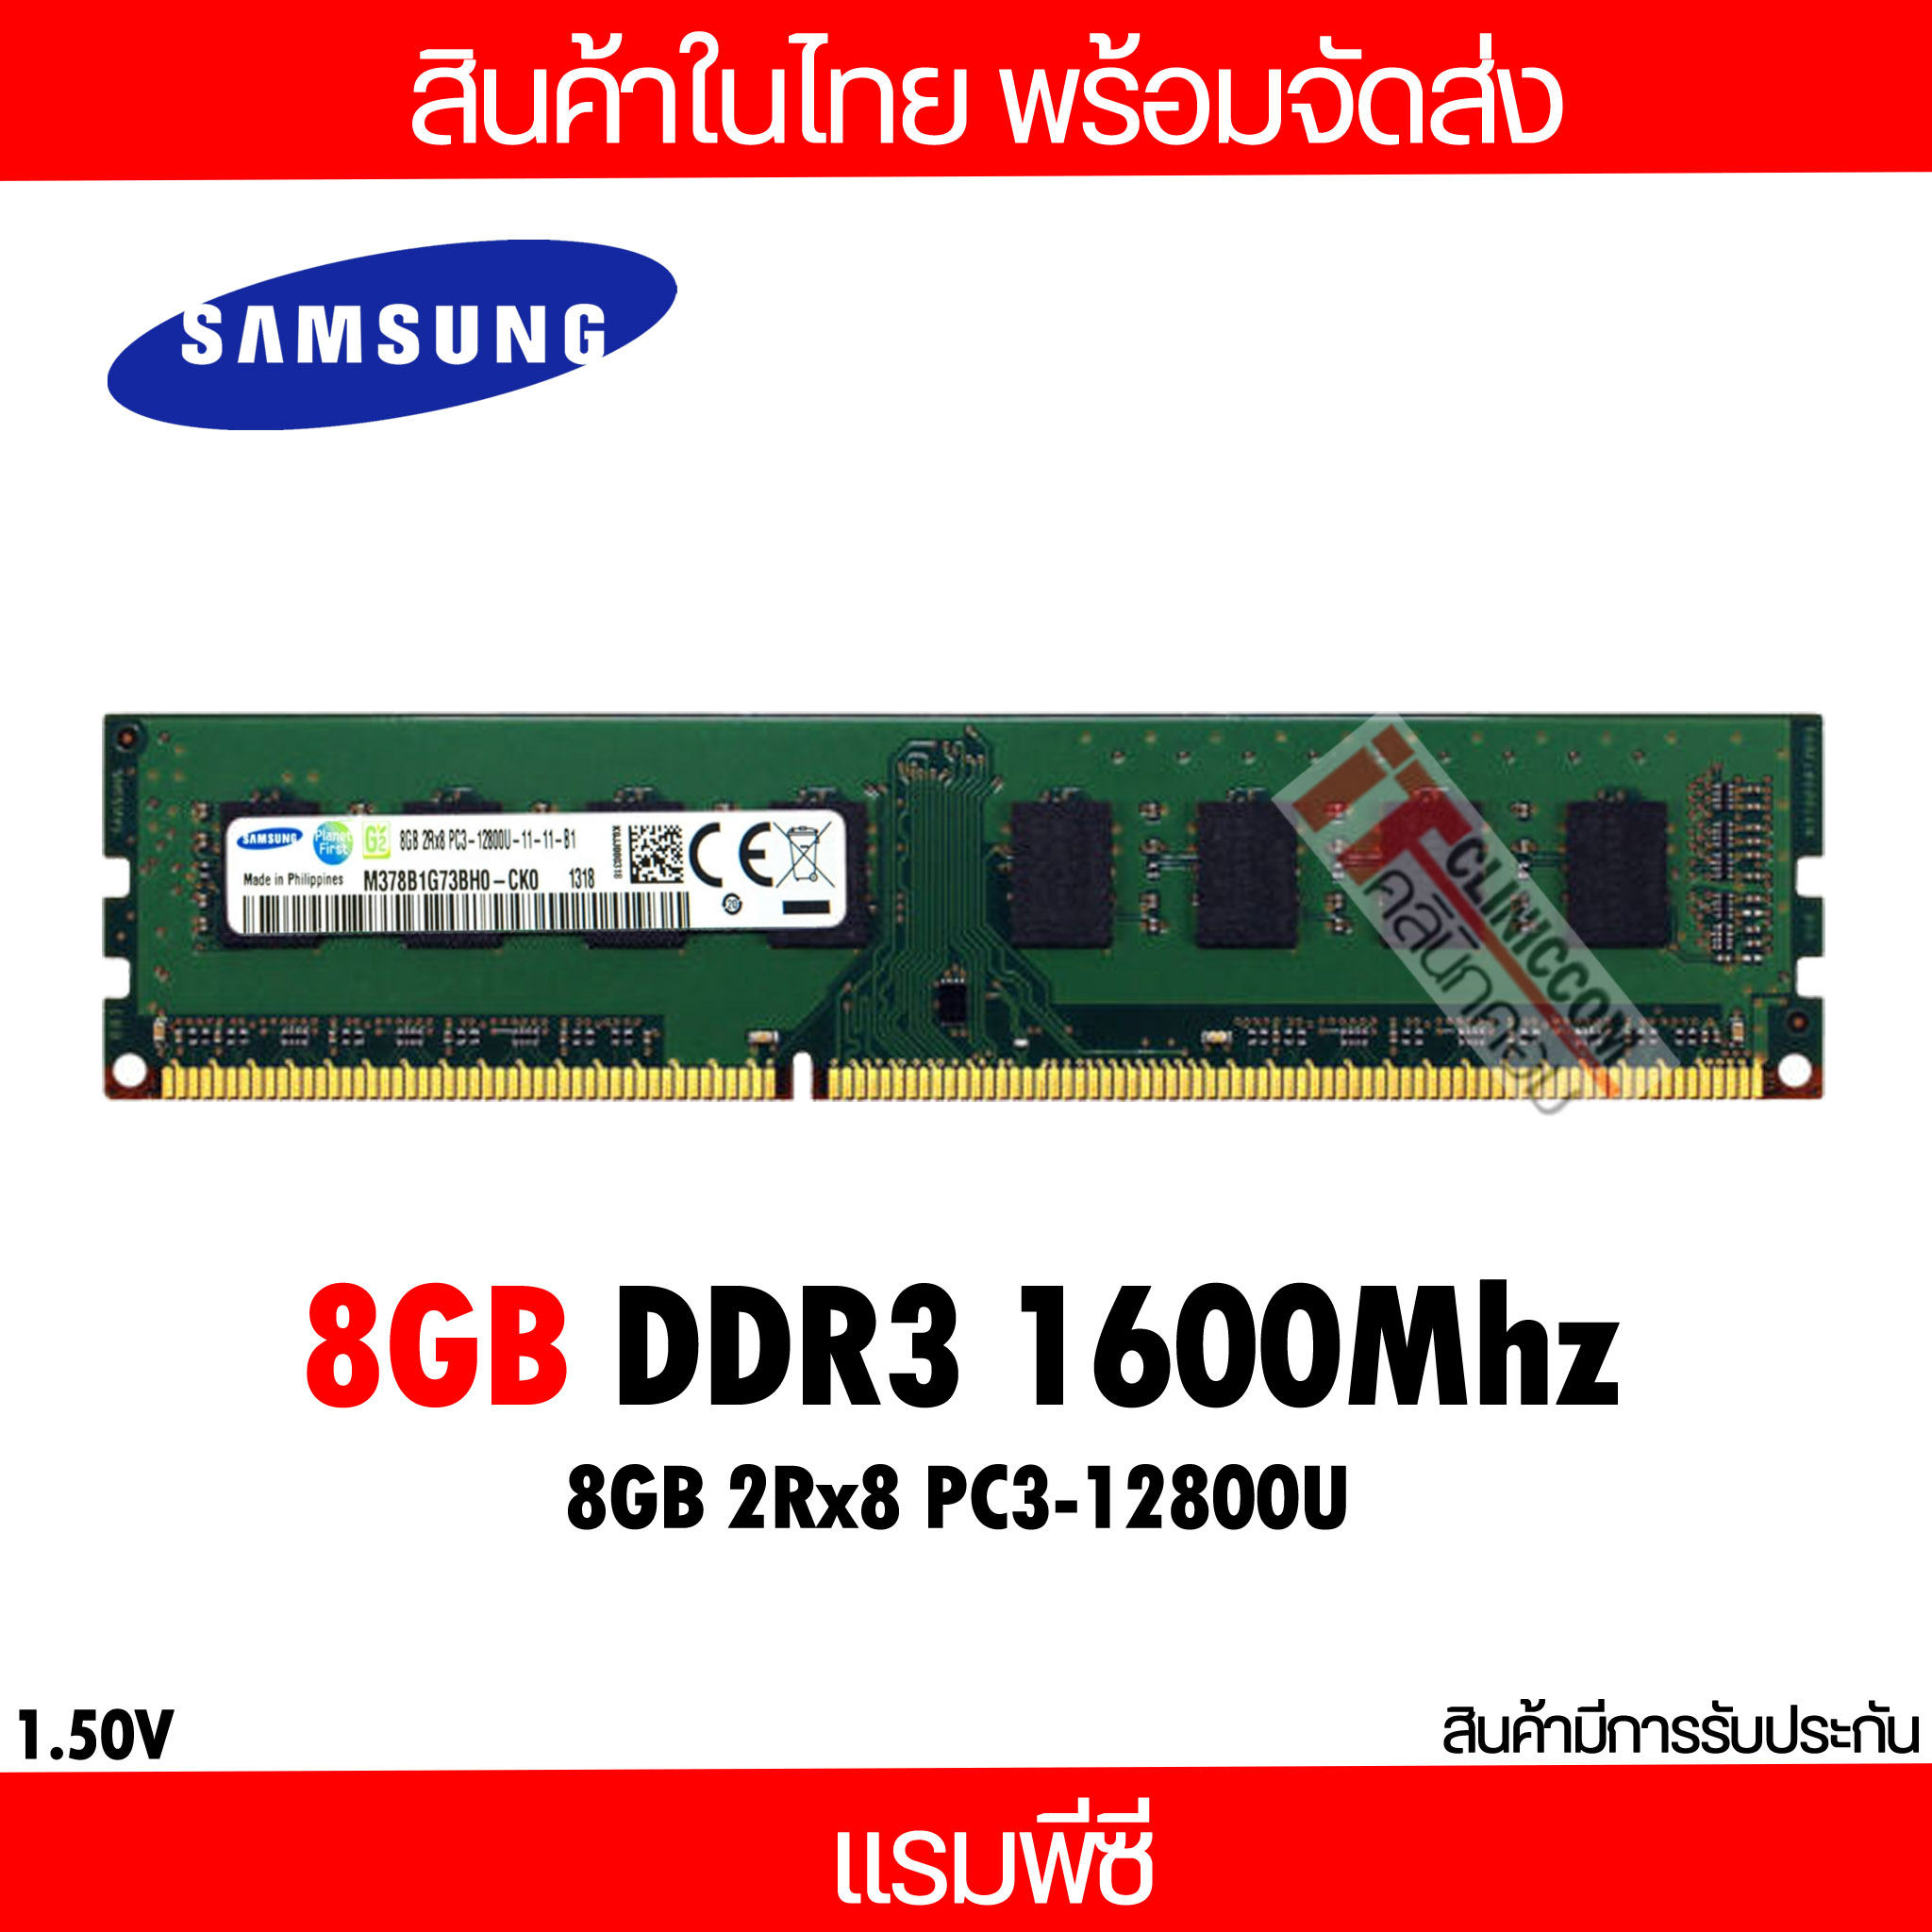 แรมพีซี 8GB DDR3 1600Mhz (8GB 2Rx8 PC3-12800u) Samsung Ram Desktop สินค้าใหม่ (ITCNC009)